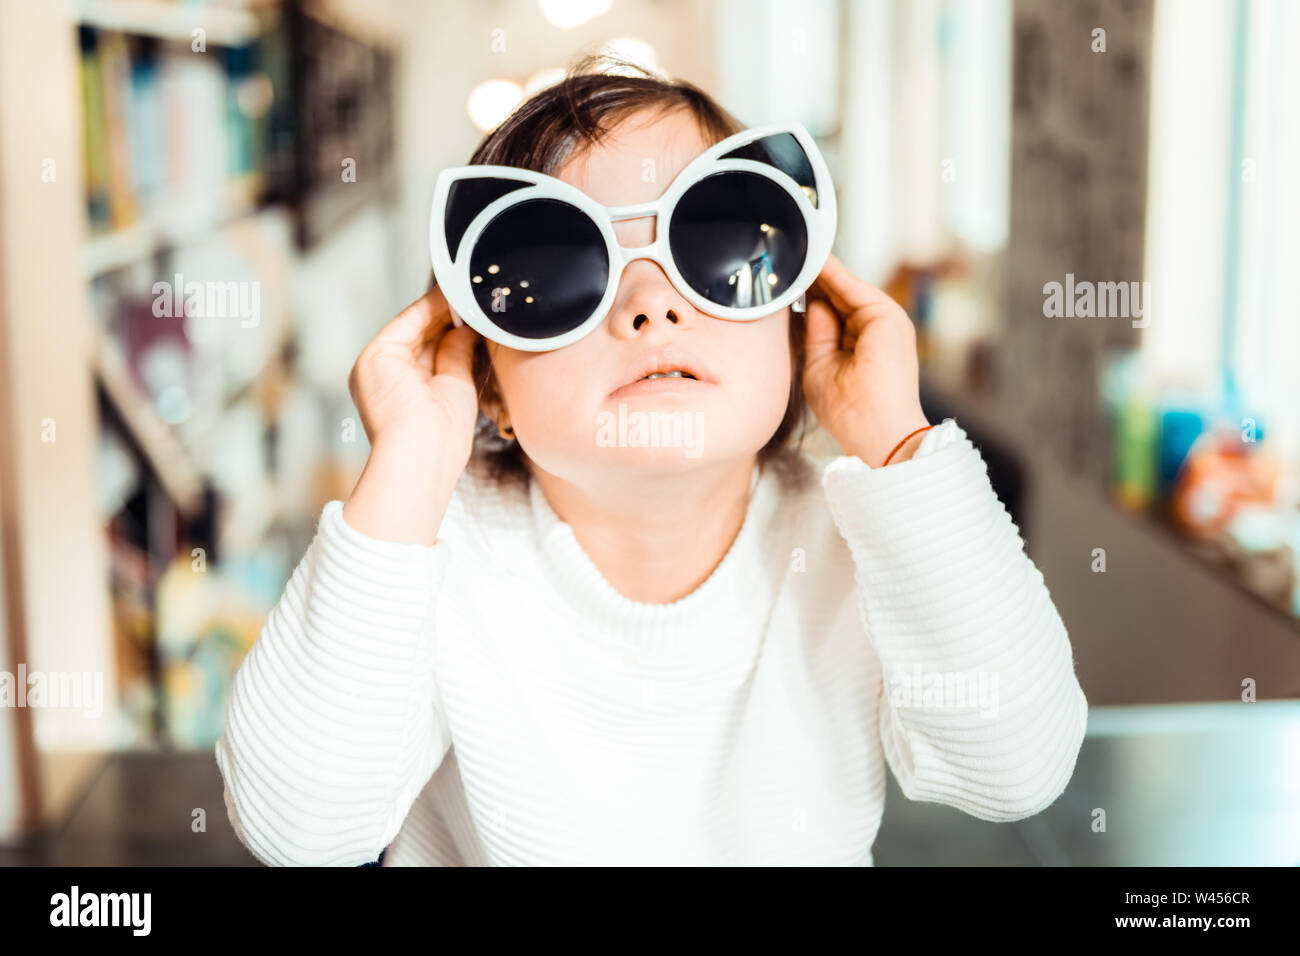 Kleines Kind mit Down-Syndrom tragen Big Cat-förmige Sonnenbrille Stockfoto